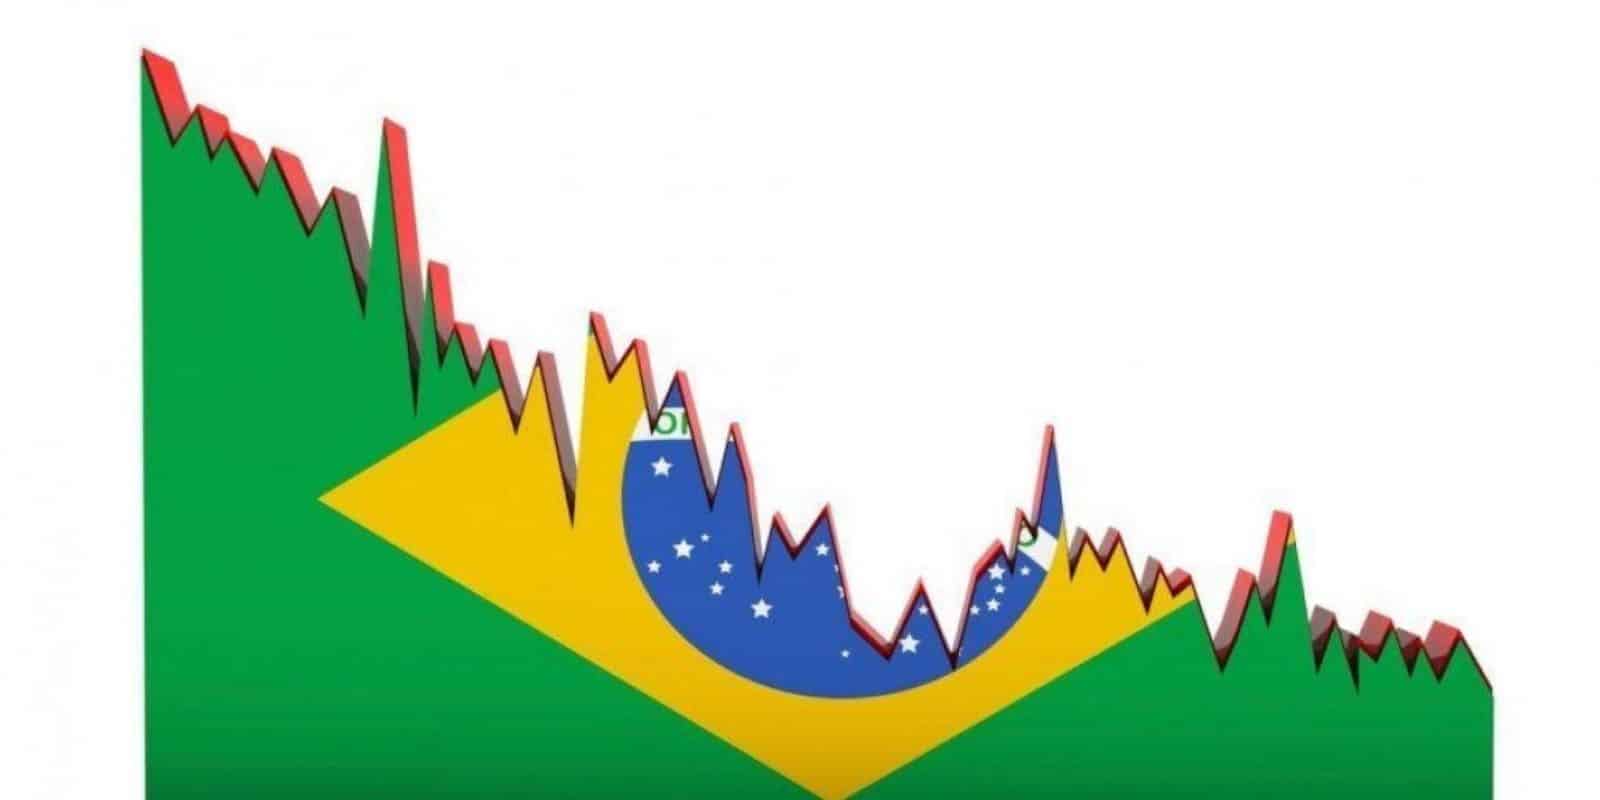 Crise Brasil - Folha de S. Paulo - Quist Investimentos 20'04